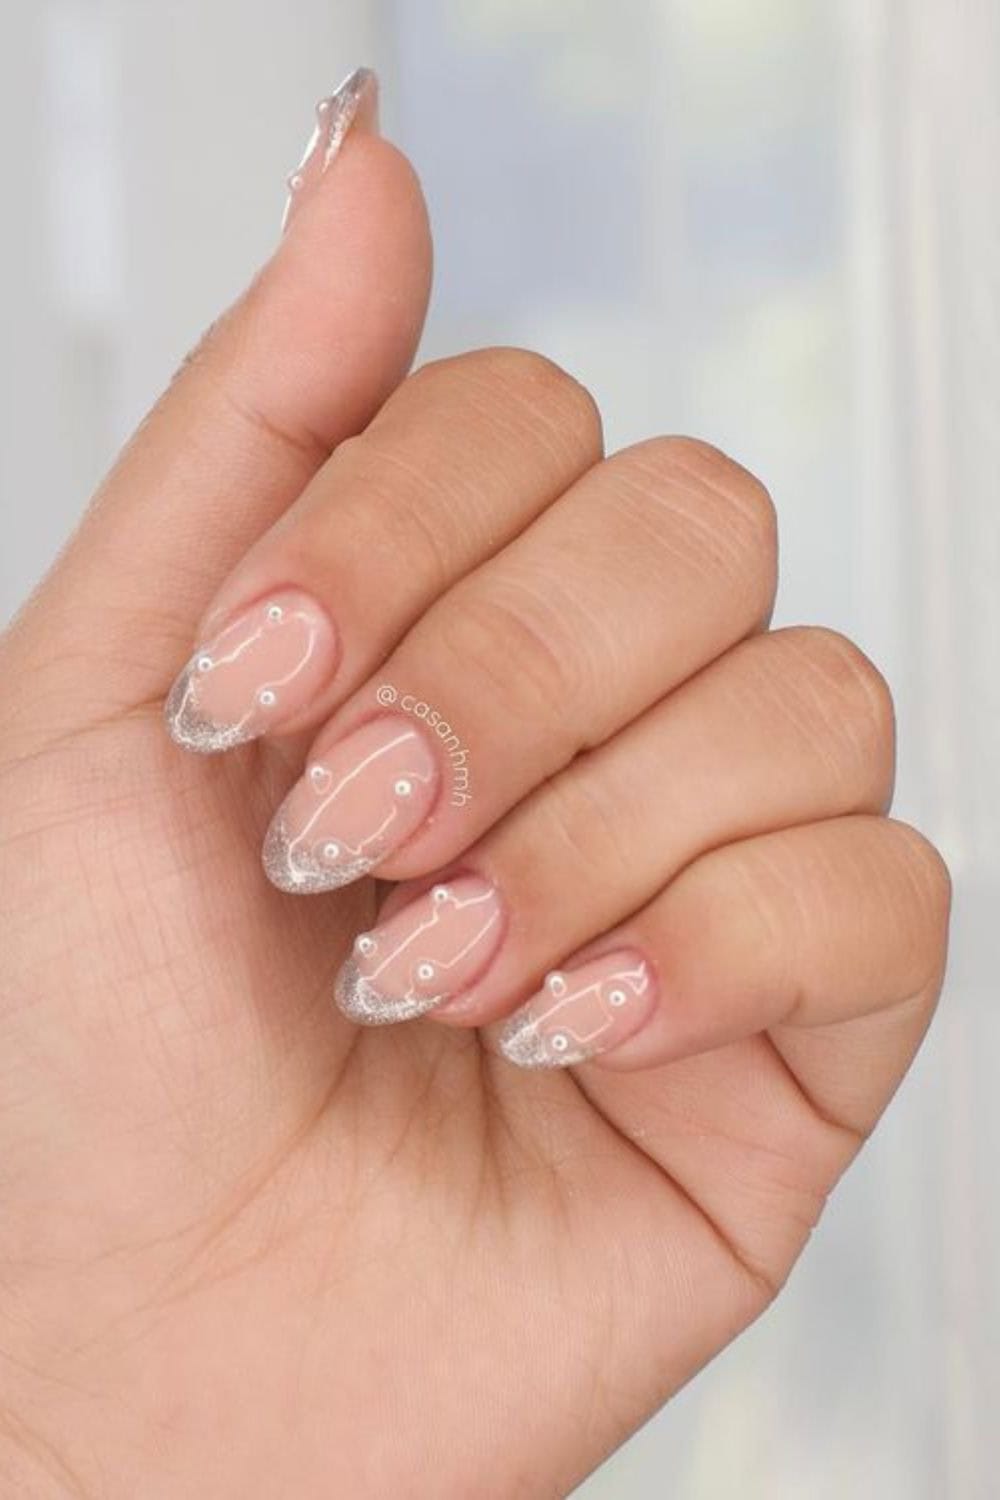 Classy nail designs Beach Pearls